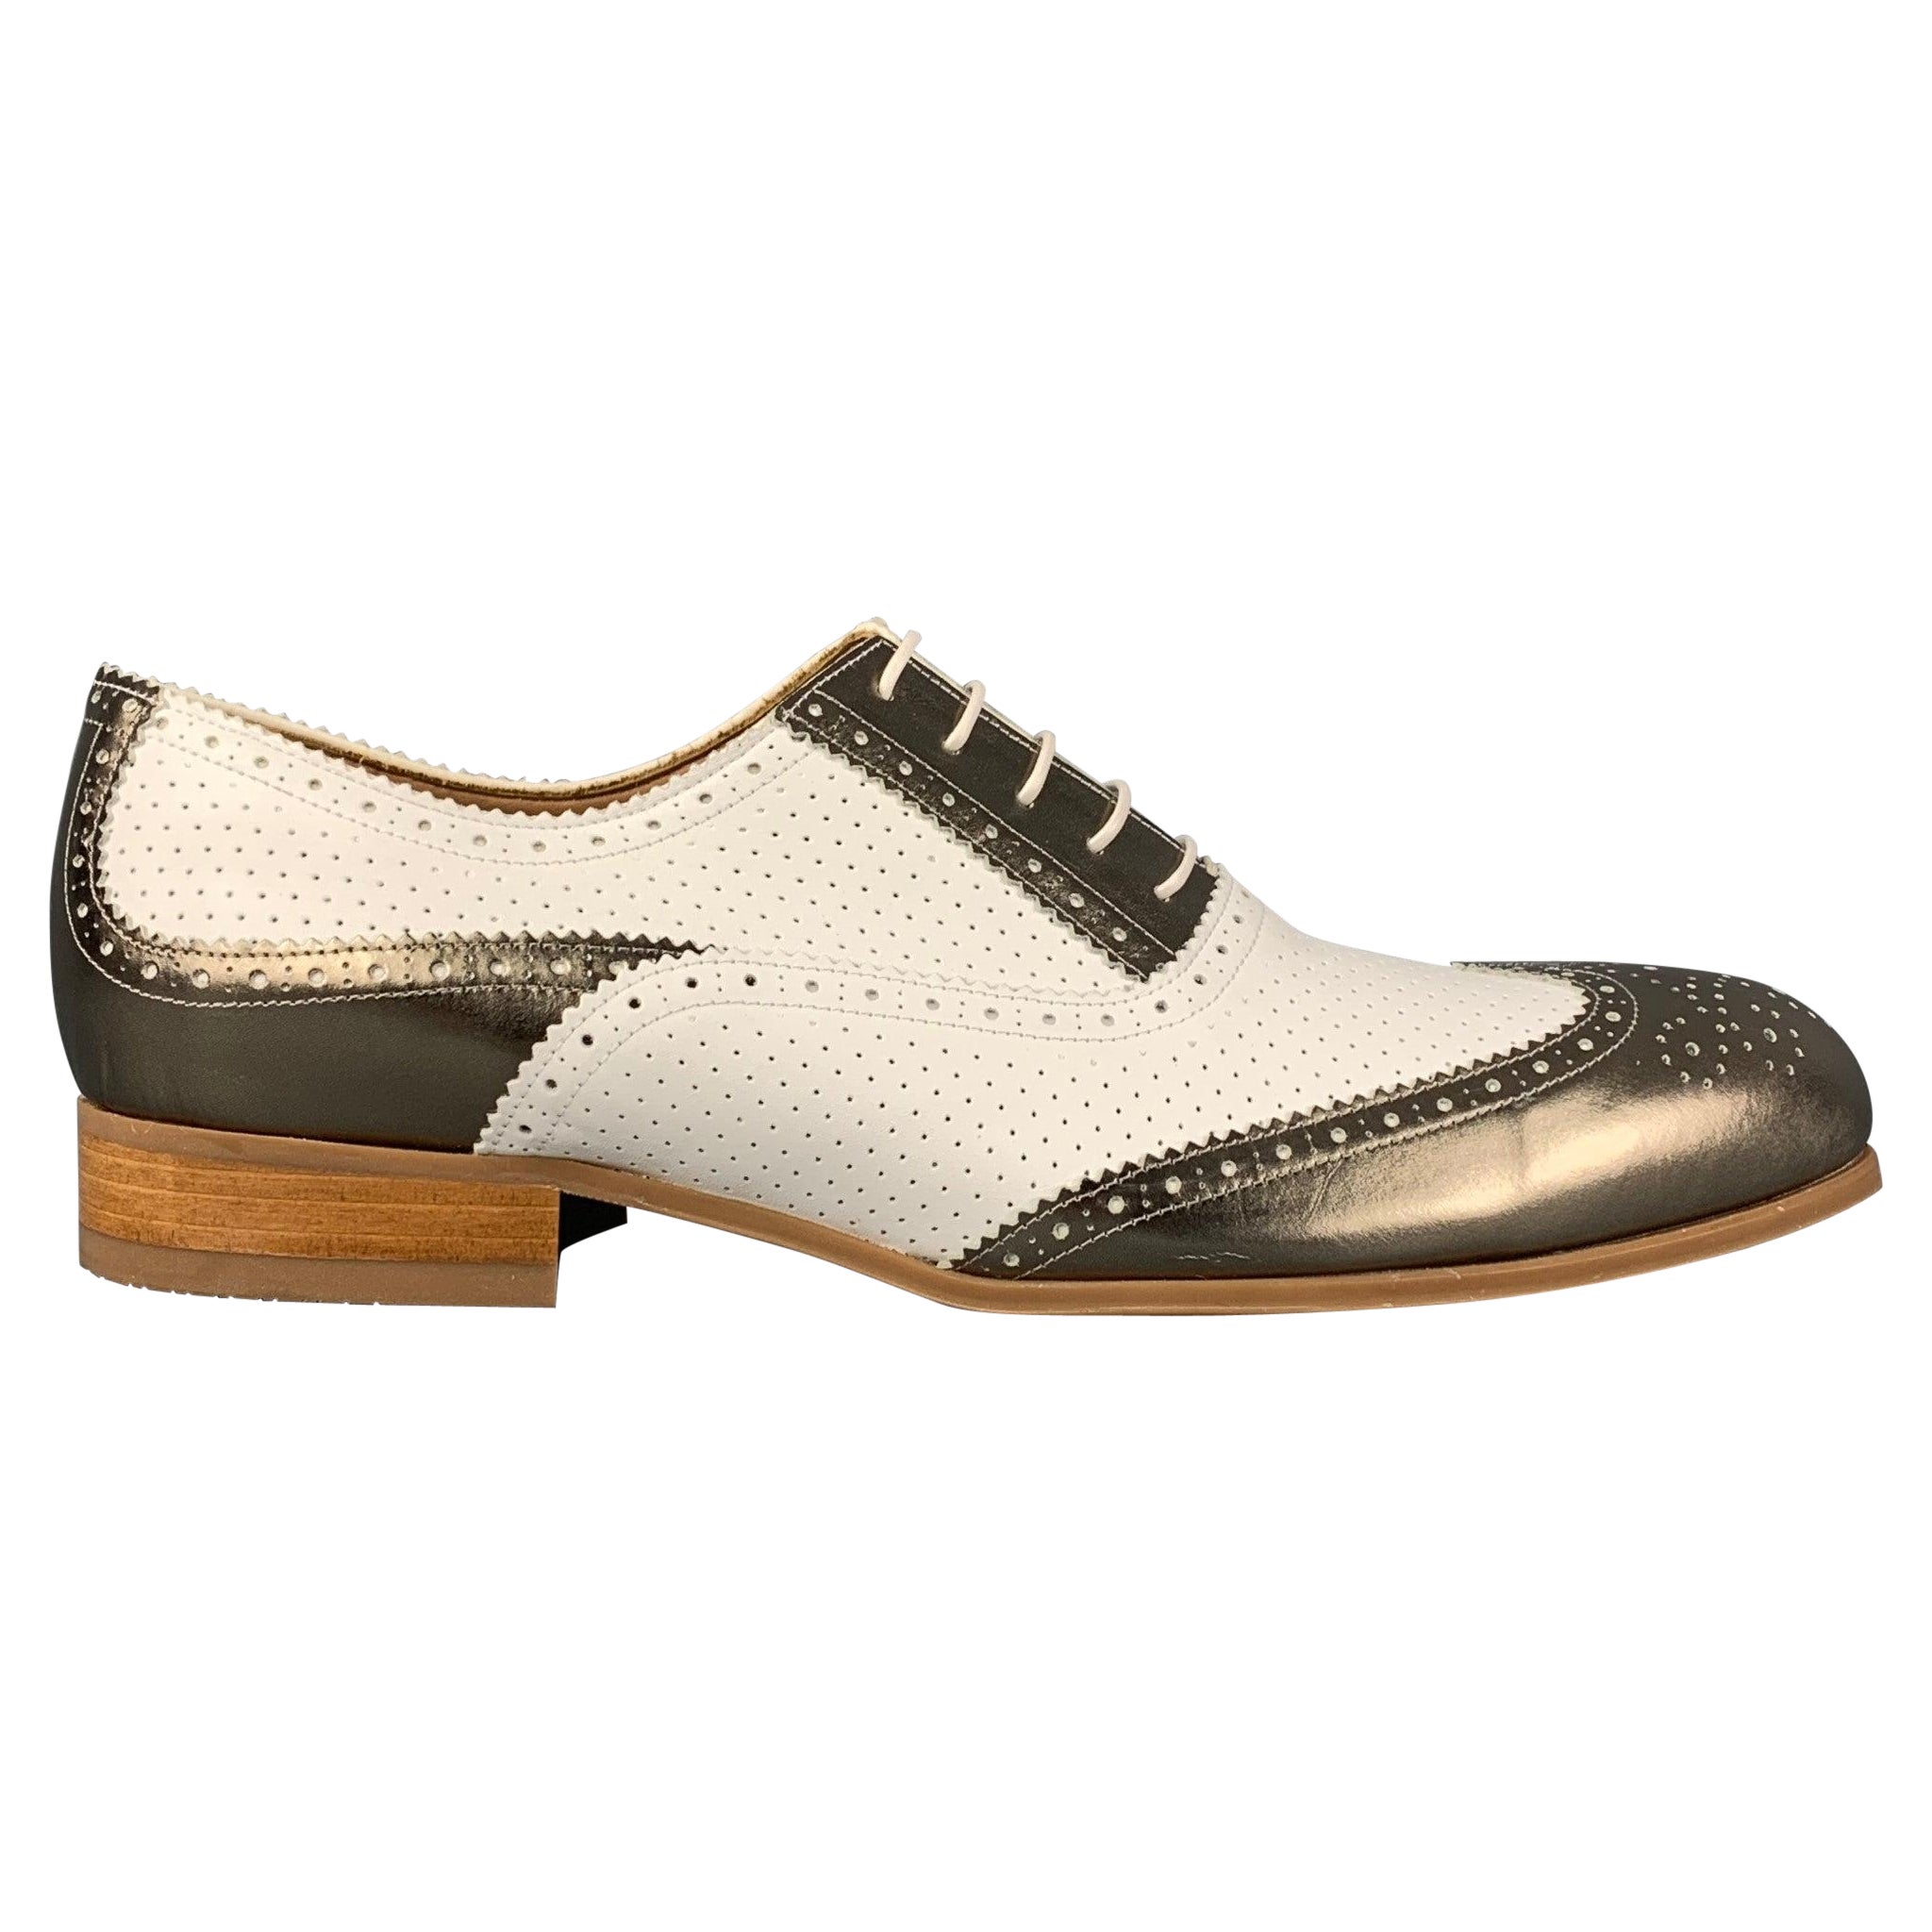 EMPORIO ARMANI - Chaussures Spectator à lacets en cuir perforé blanc métallisé, taille 10